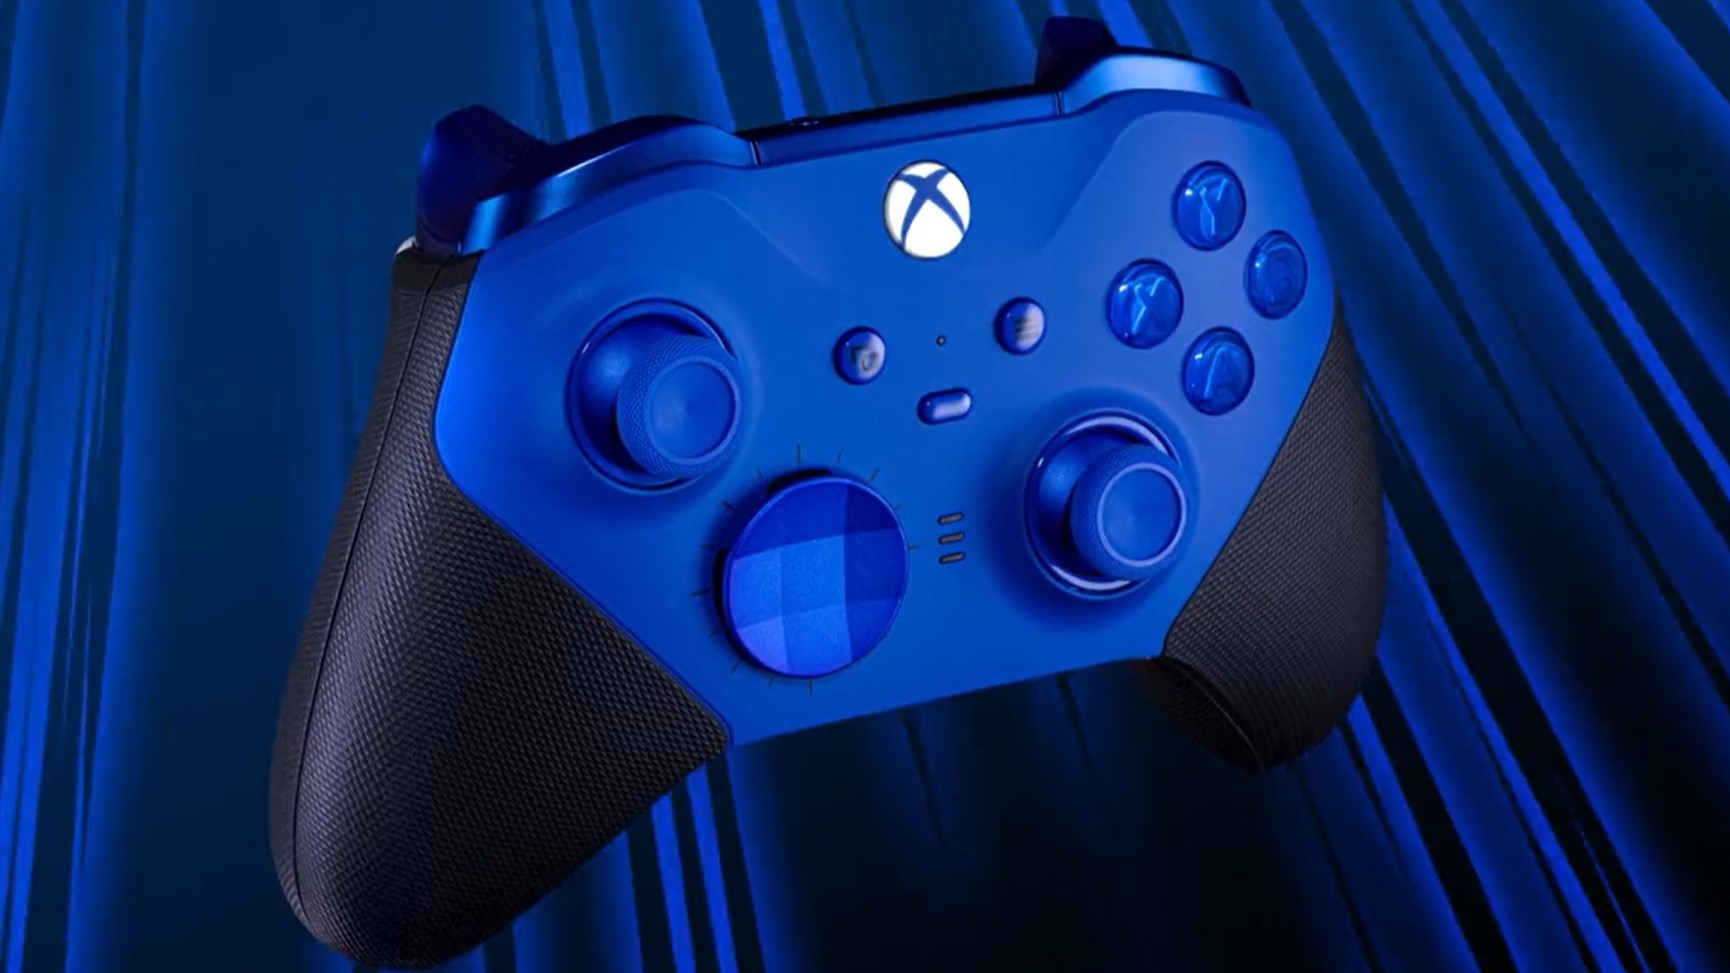 Controlador Xbox Elite Core 2 en azul